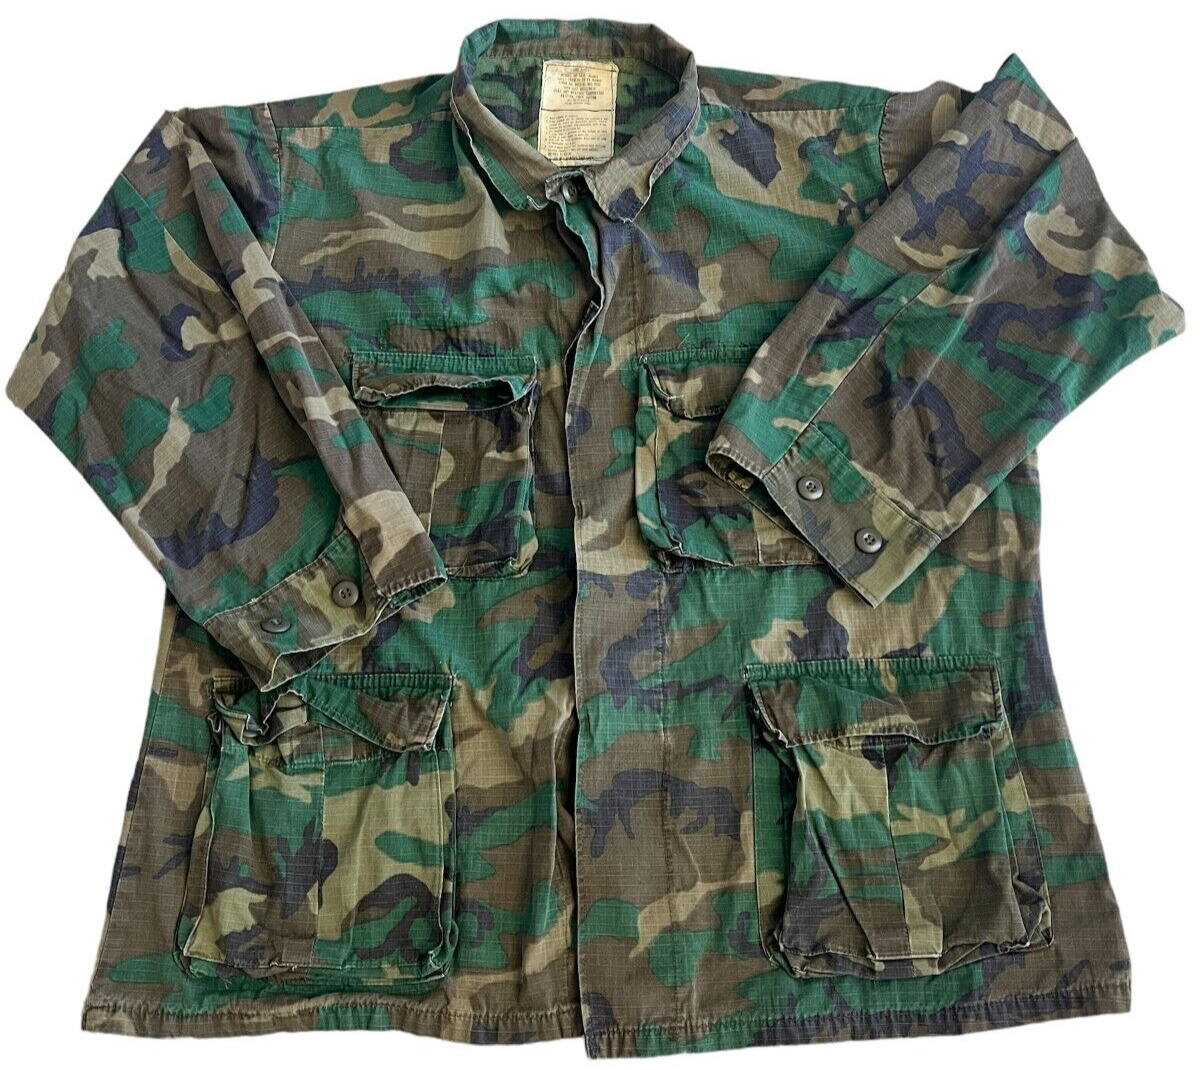 US Army Hot Weather Coat Woodland Camo Size Large Short Military Long Sleeve